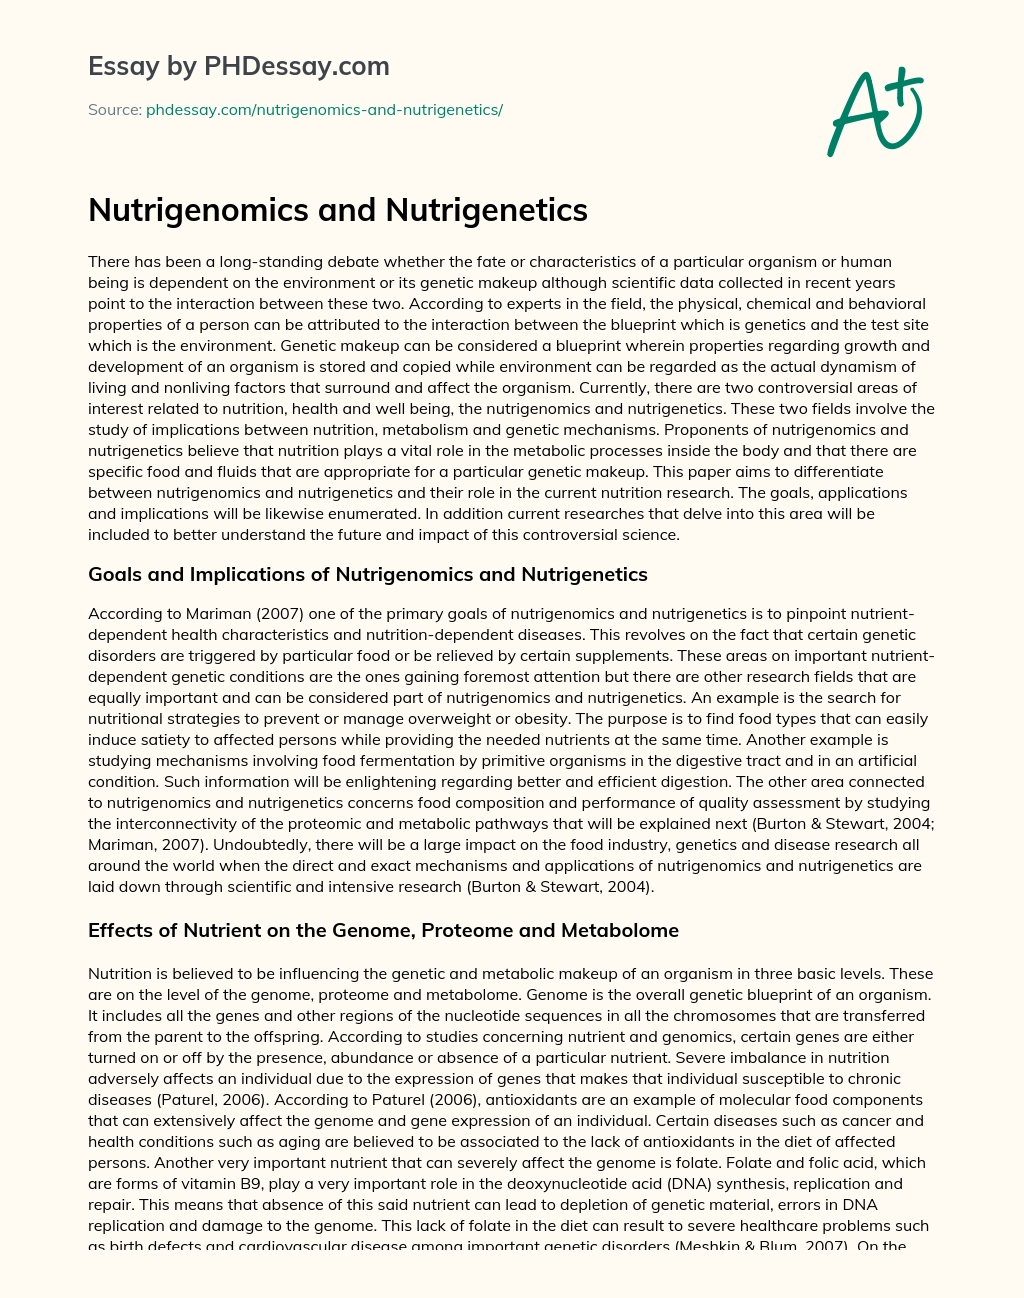 Nutrigenomics and Nutrigenetics essay